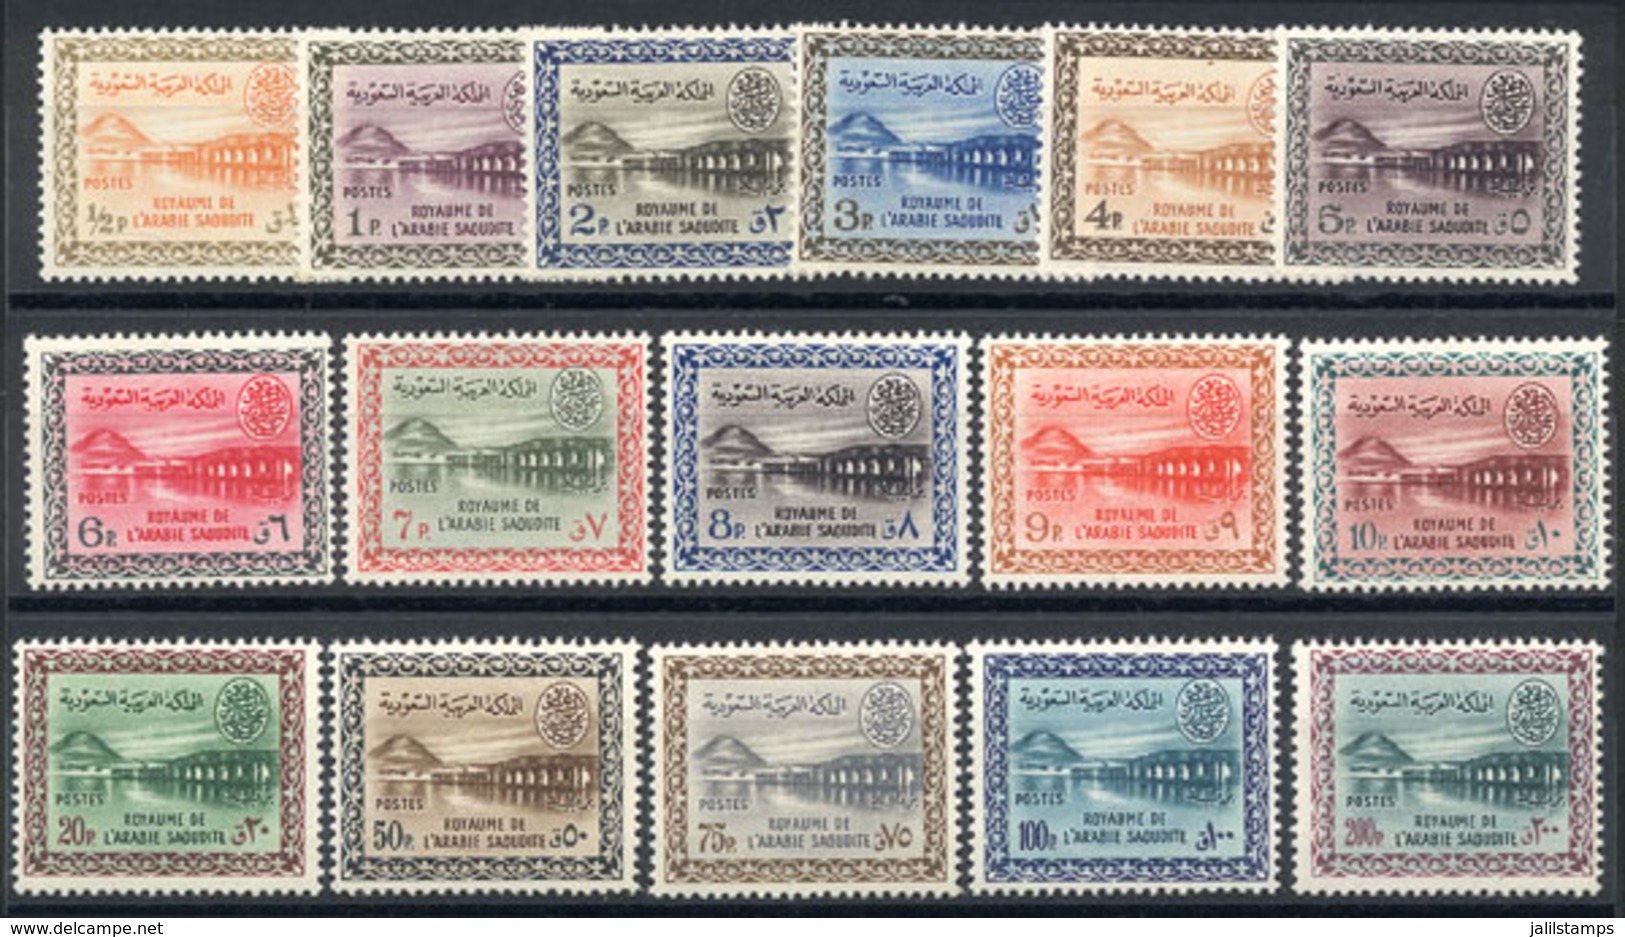 99 SAUDI ARABIA: Yvert 165/177, 1961 Wadi Shi Dam, Cmpl. Set Of 16 MNH Values, VF Q - Saudi Arabia